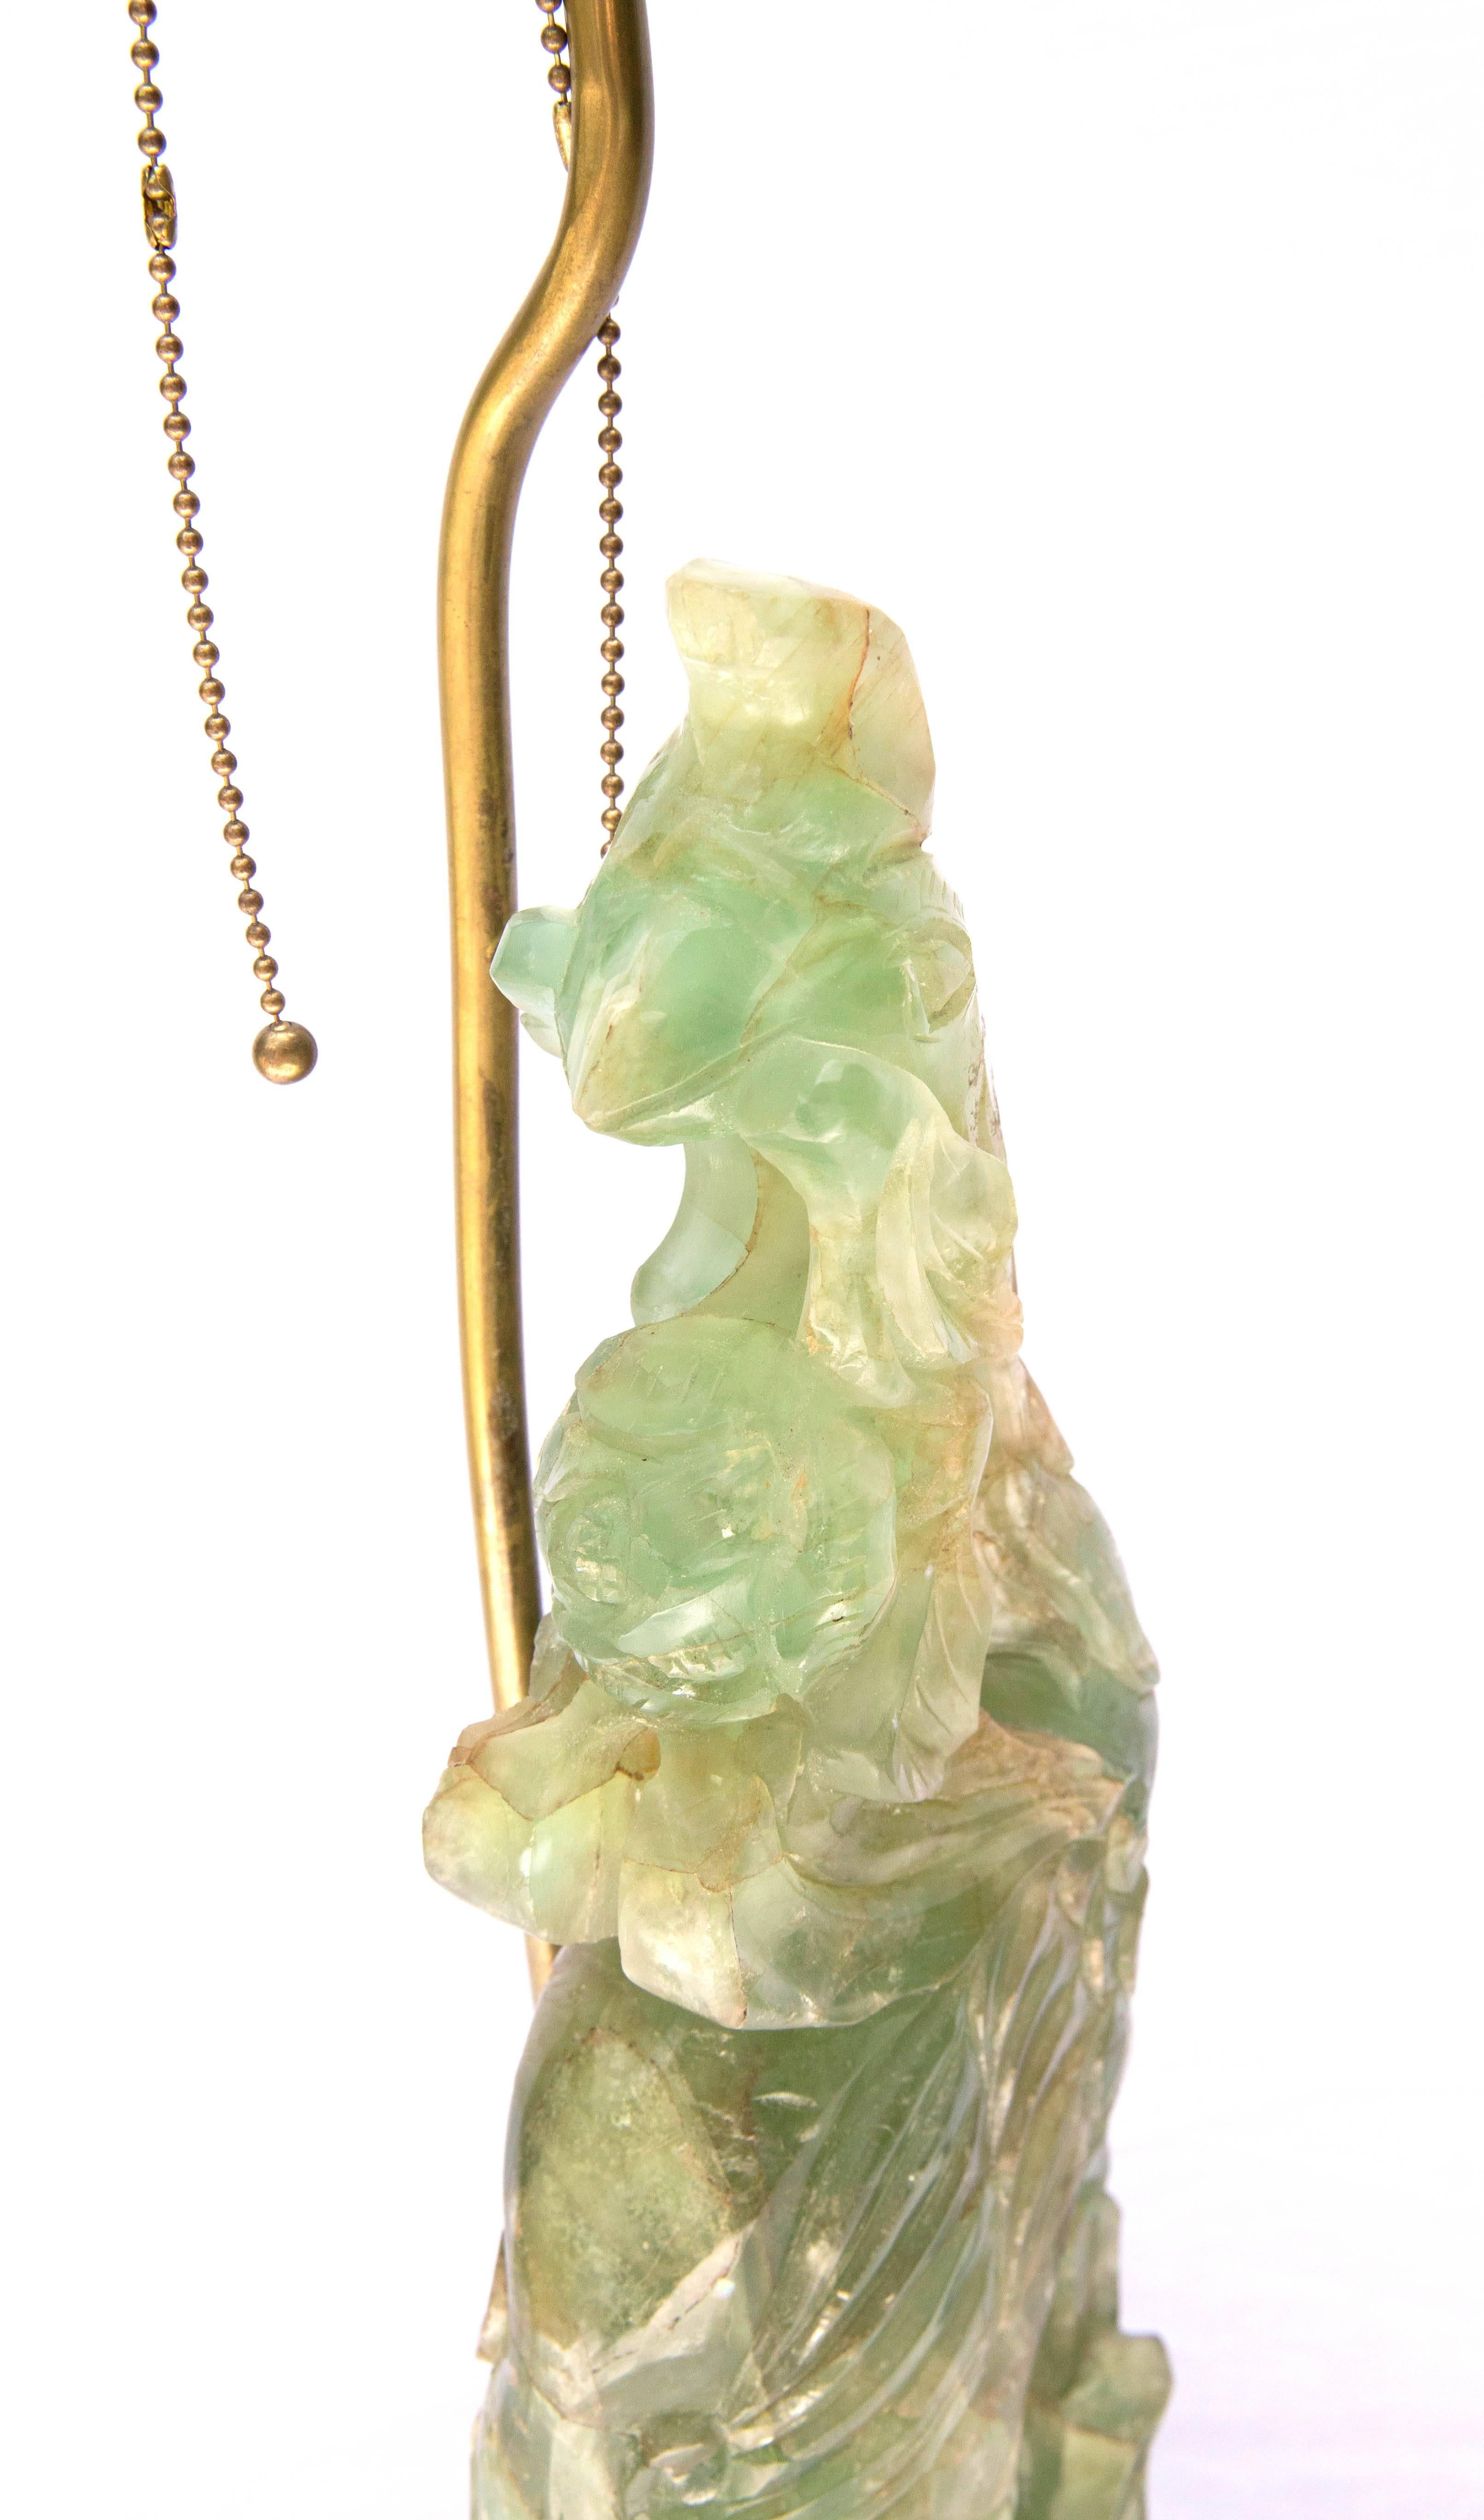 Chinesische geschnitzte Jade-Phönix-Tischlampe aus dem 19. Jahrhundert (Geschnitzt)